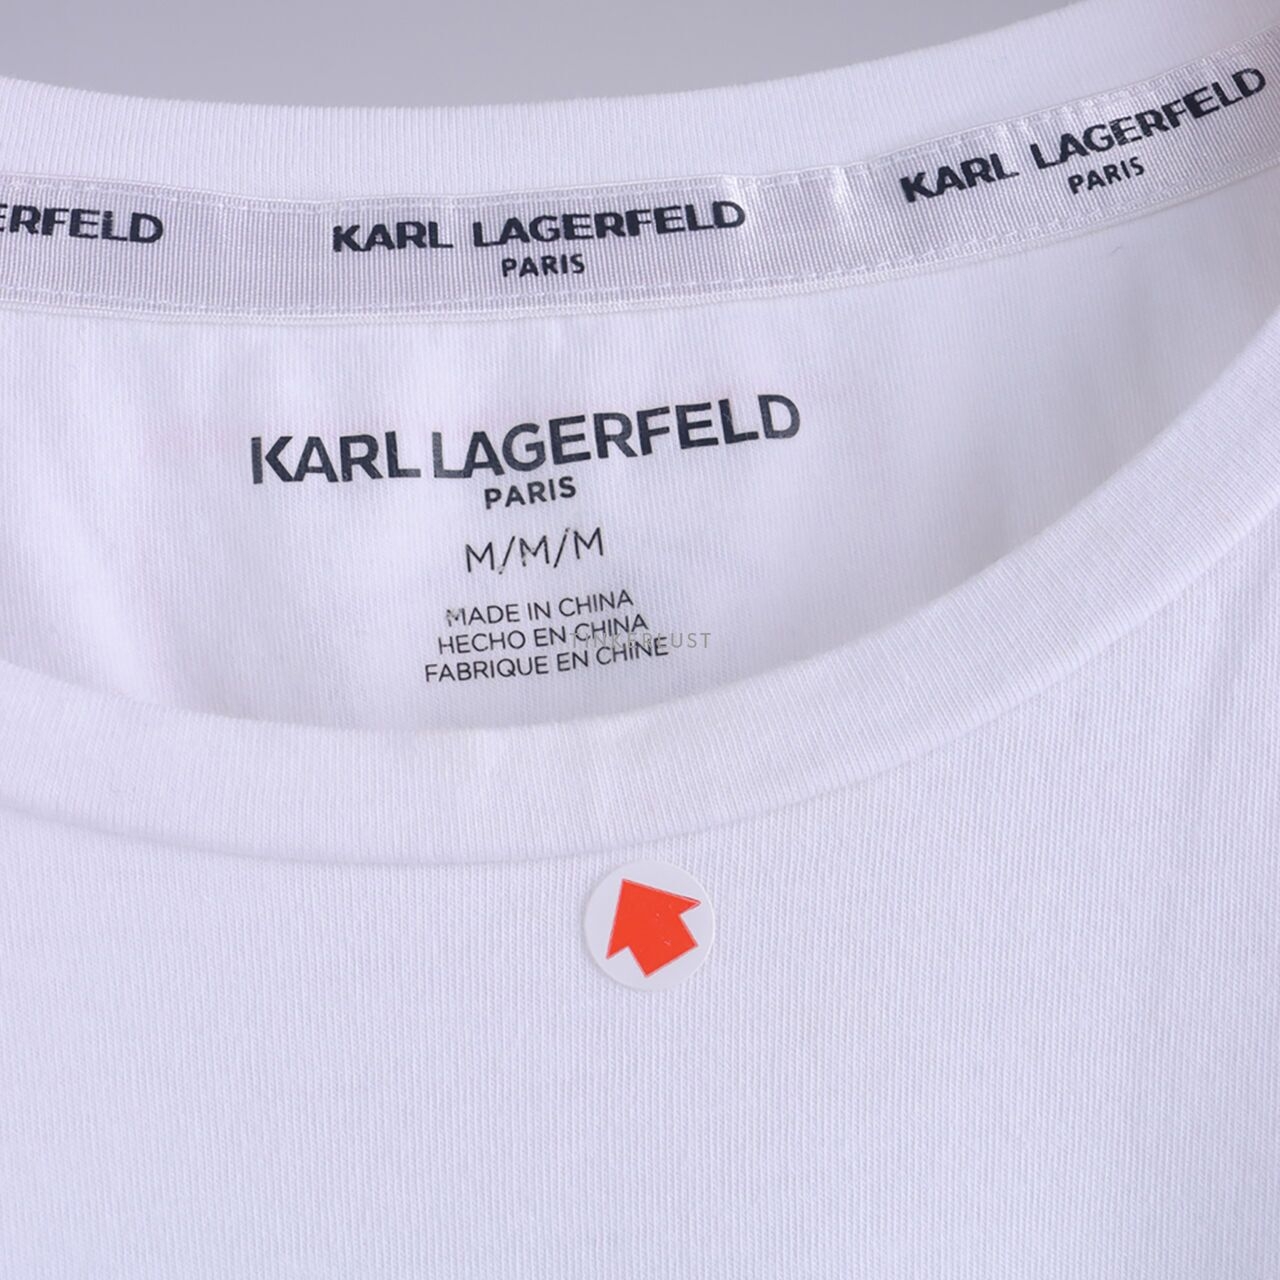 Karl Lagerfeld Road Trip Tee White T-Shirt